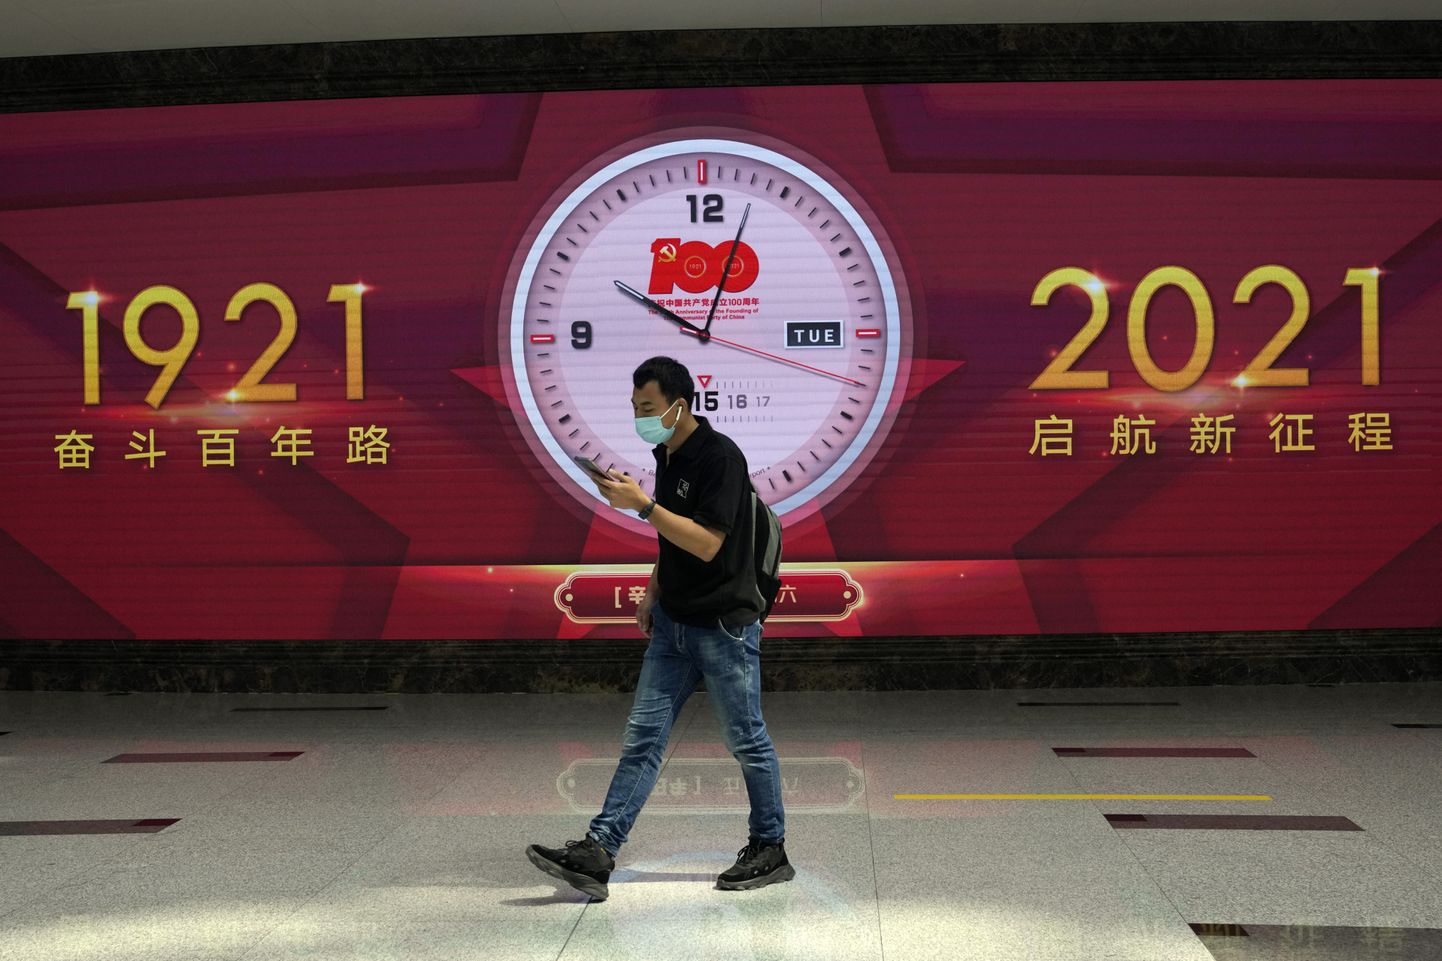 Hiina valmistub tähistama kommunistliku partei 100. aastapäeva.